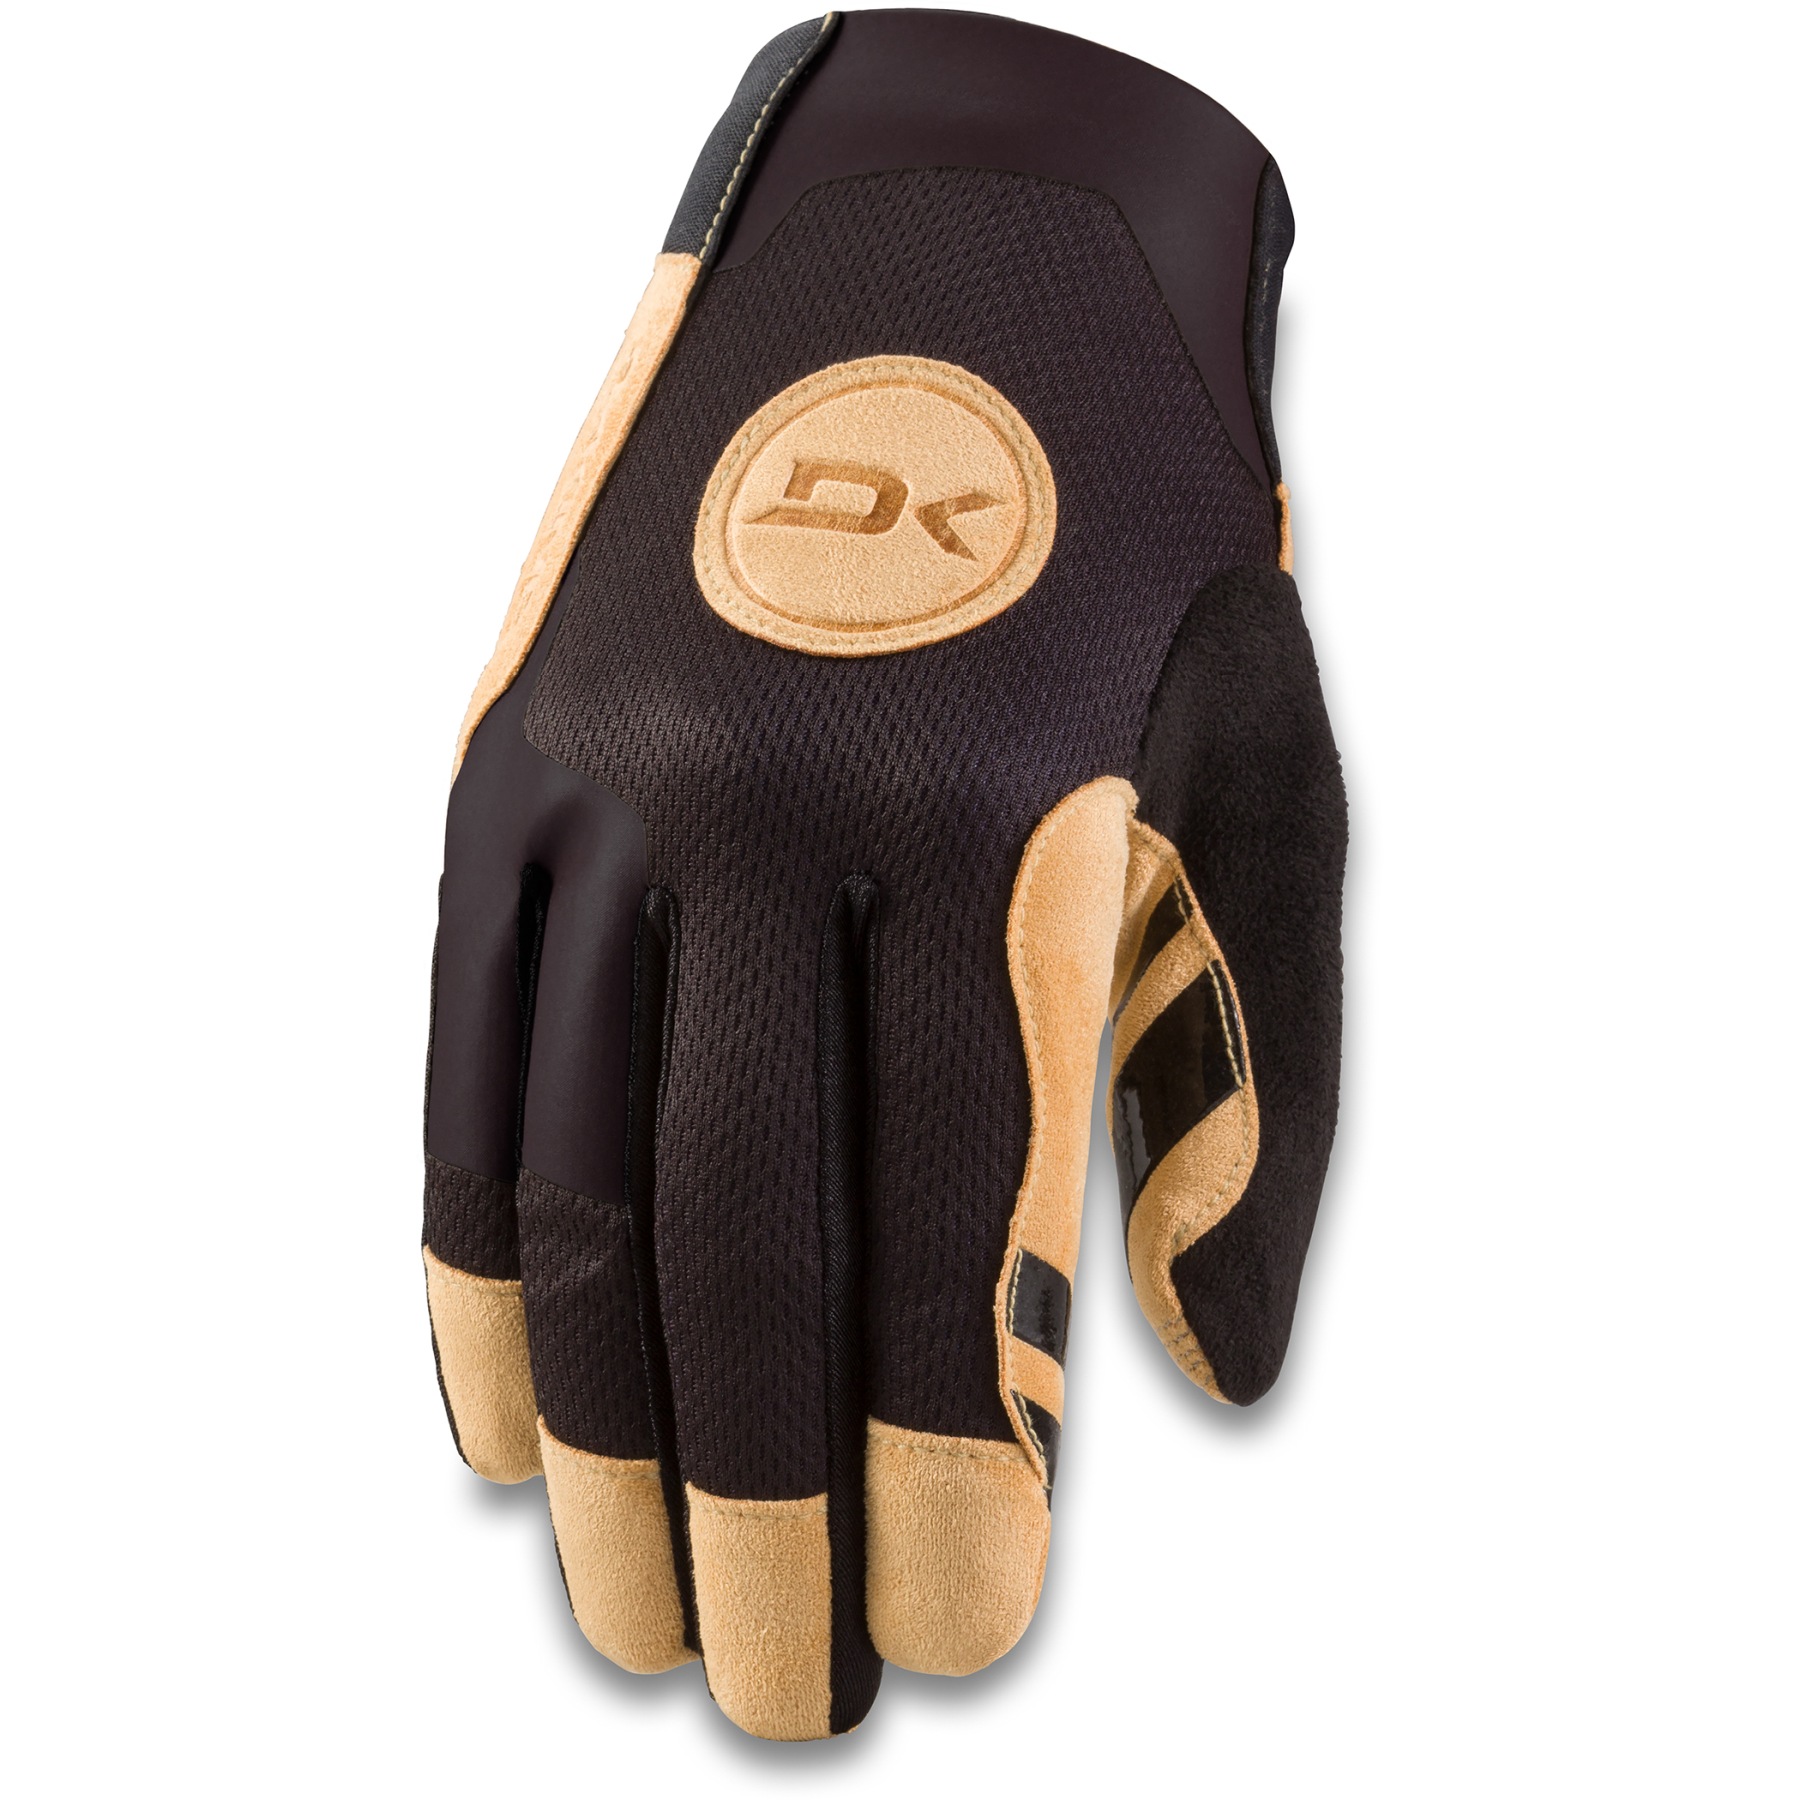 Productfoto van Dakine Covert Handschoenen - black/tan